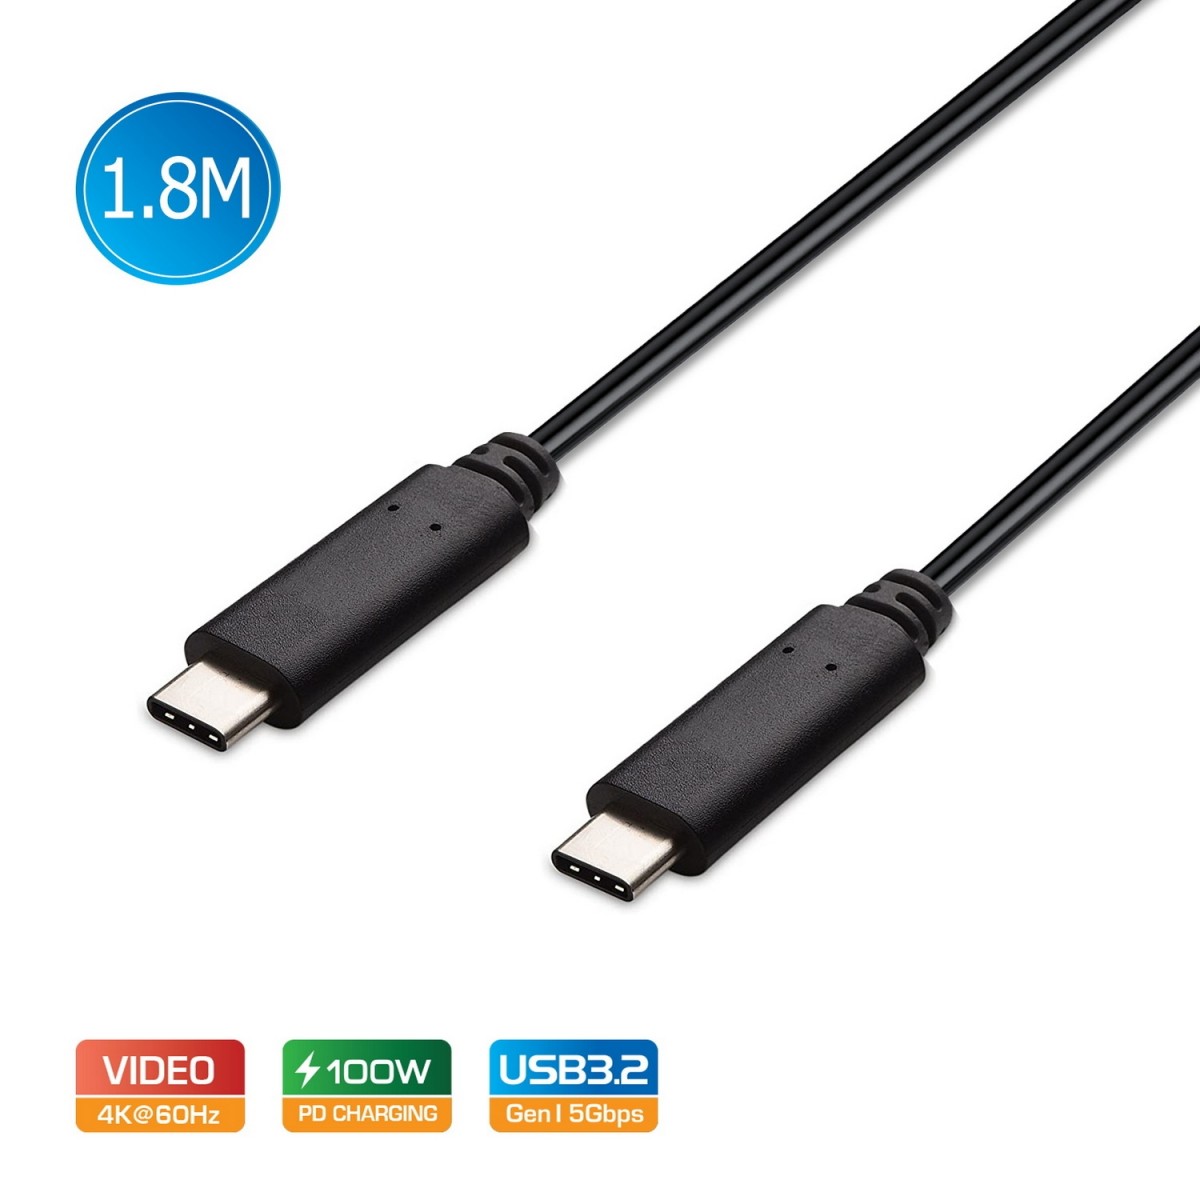  USB-C Type-C to USB-C Cable USB 3.2 Gen1 5A 100W PD 4K@60Hz 1.8M  